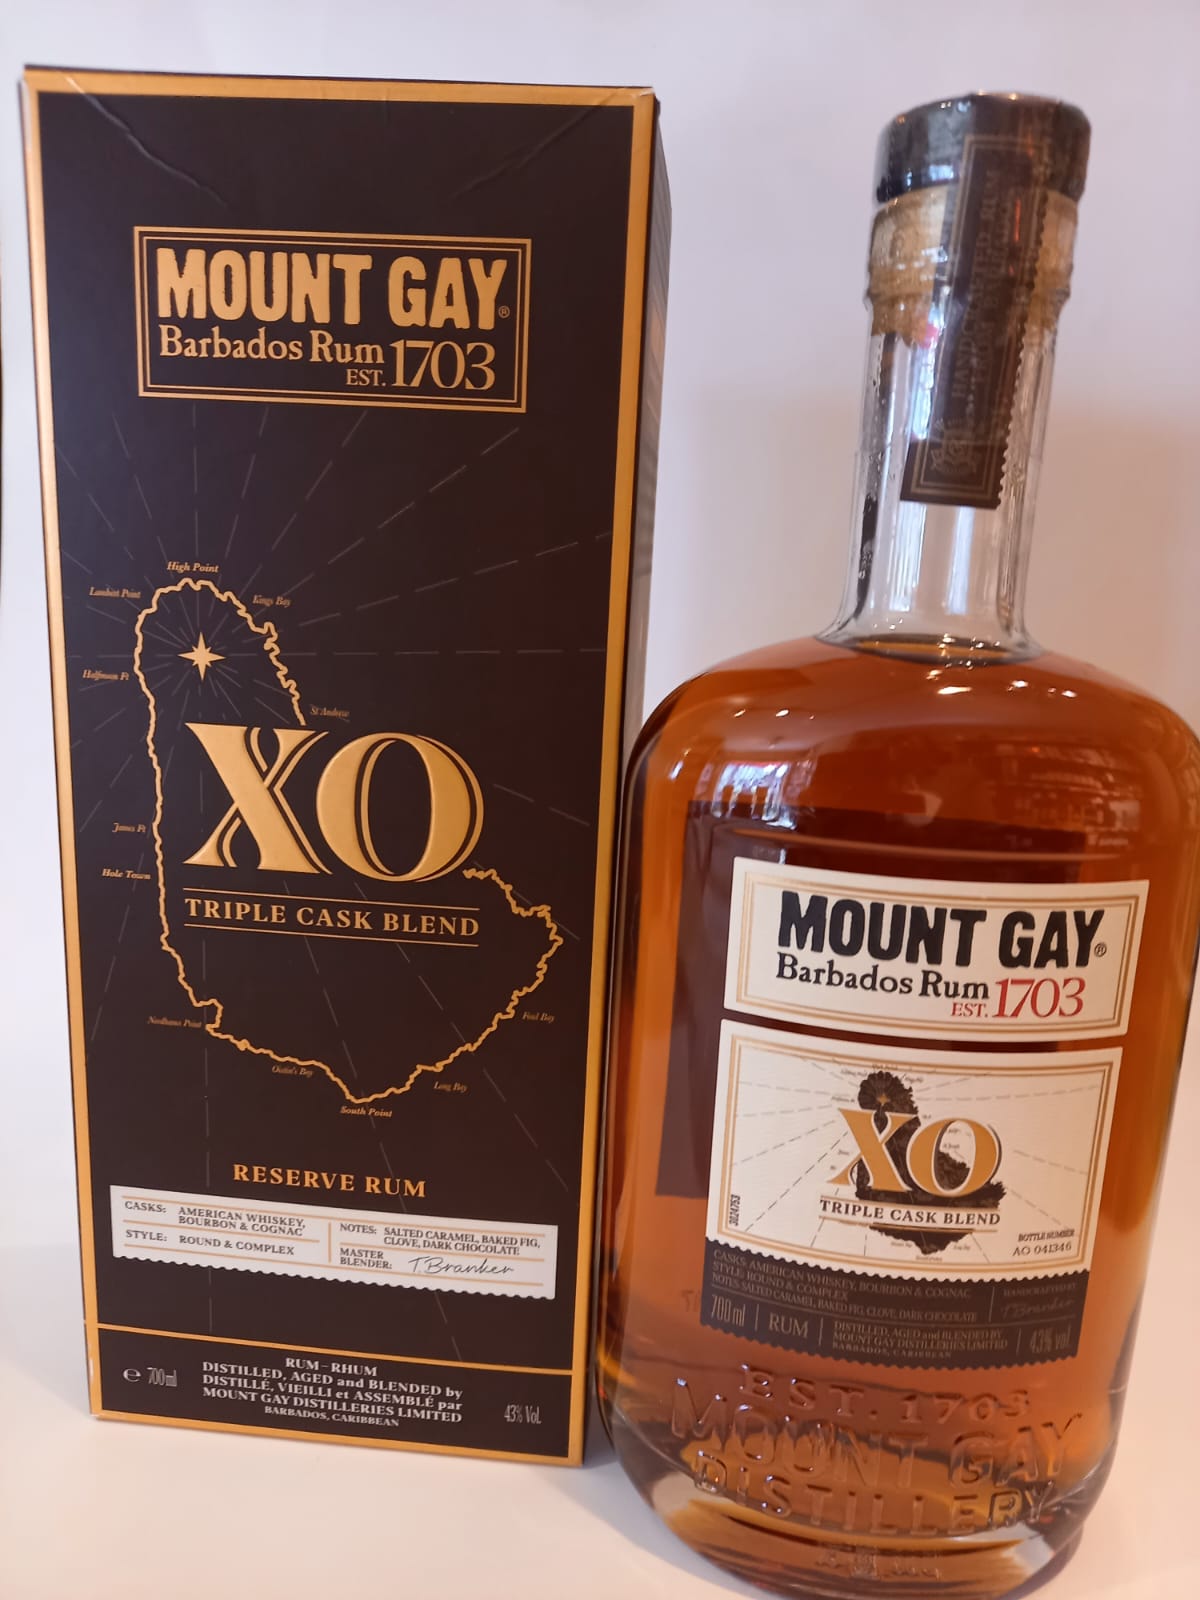 Mount Gay Rum XO